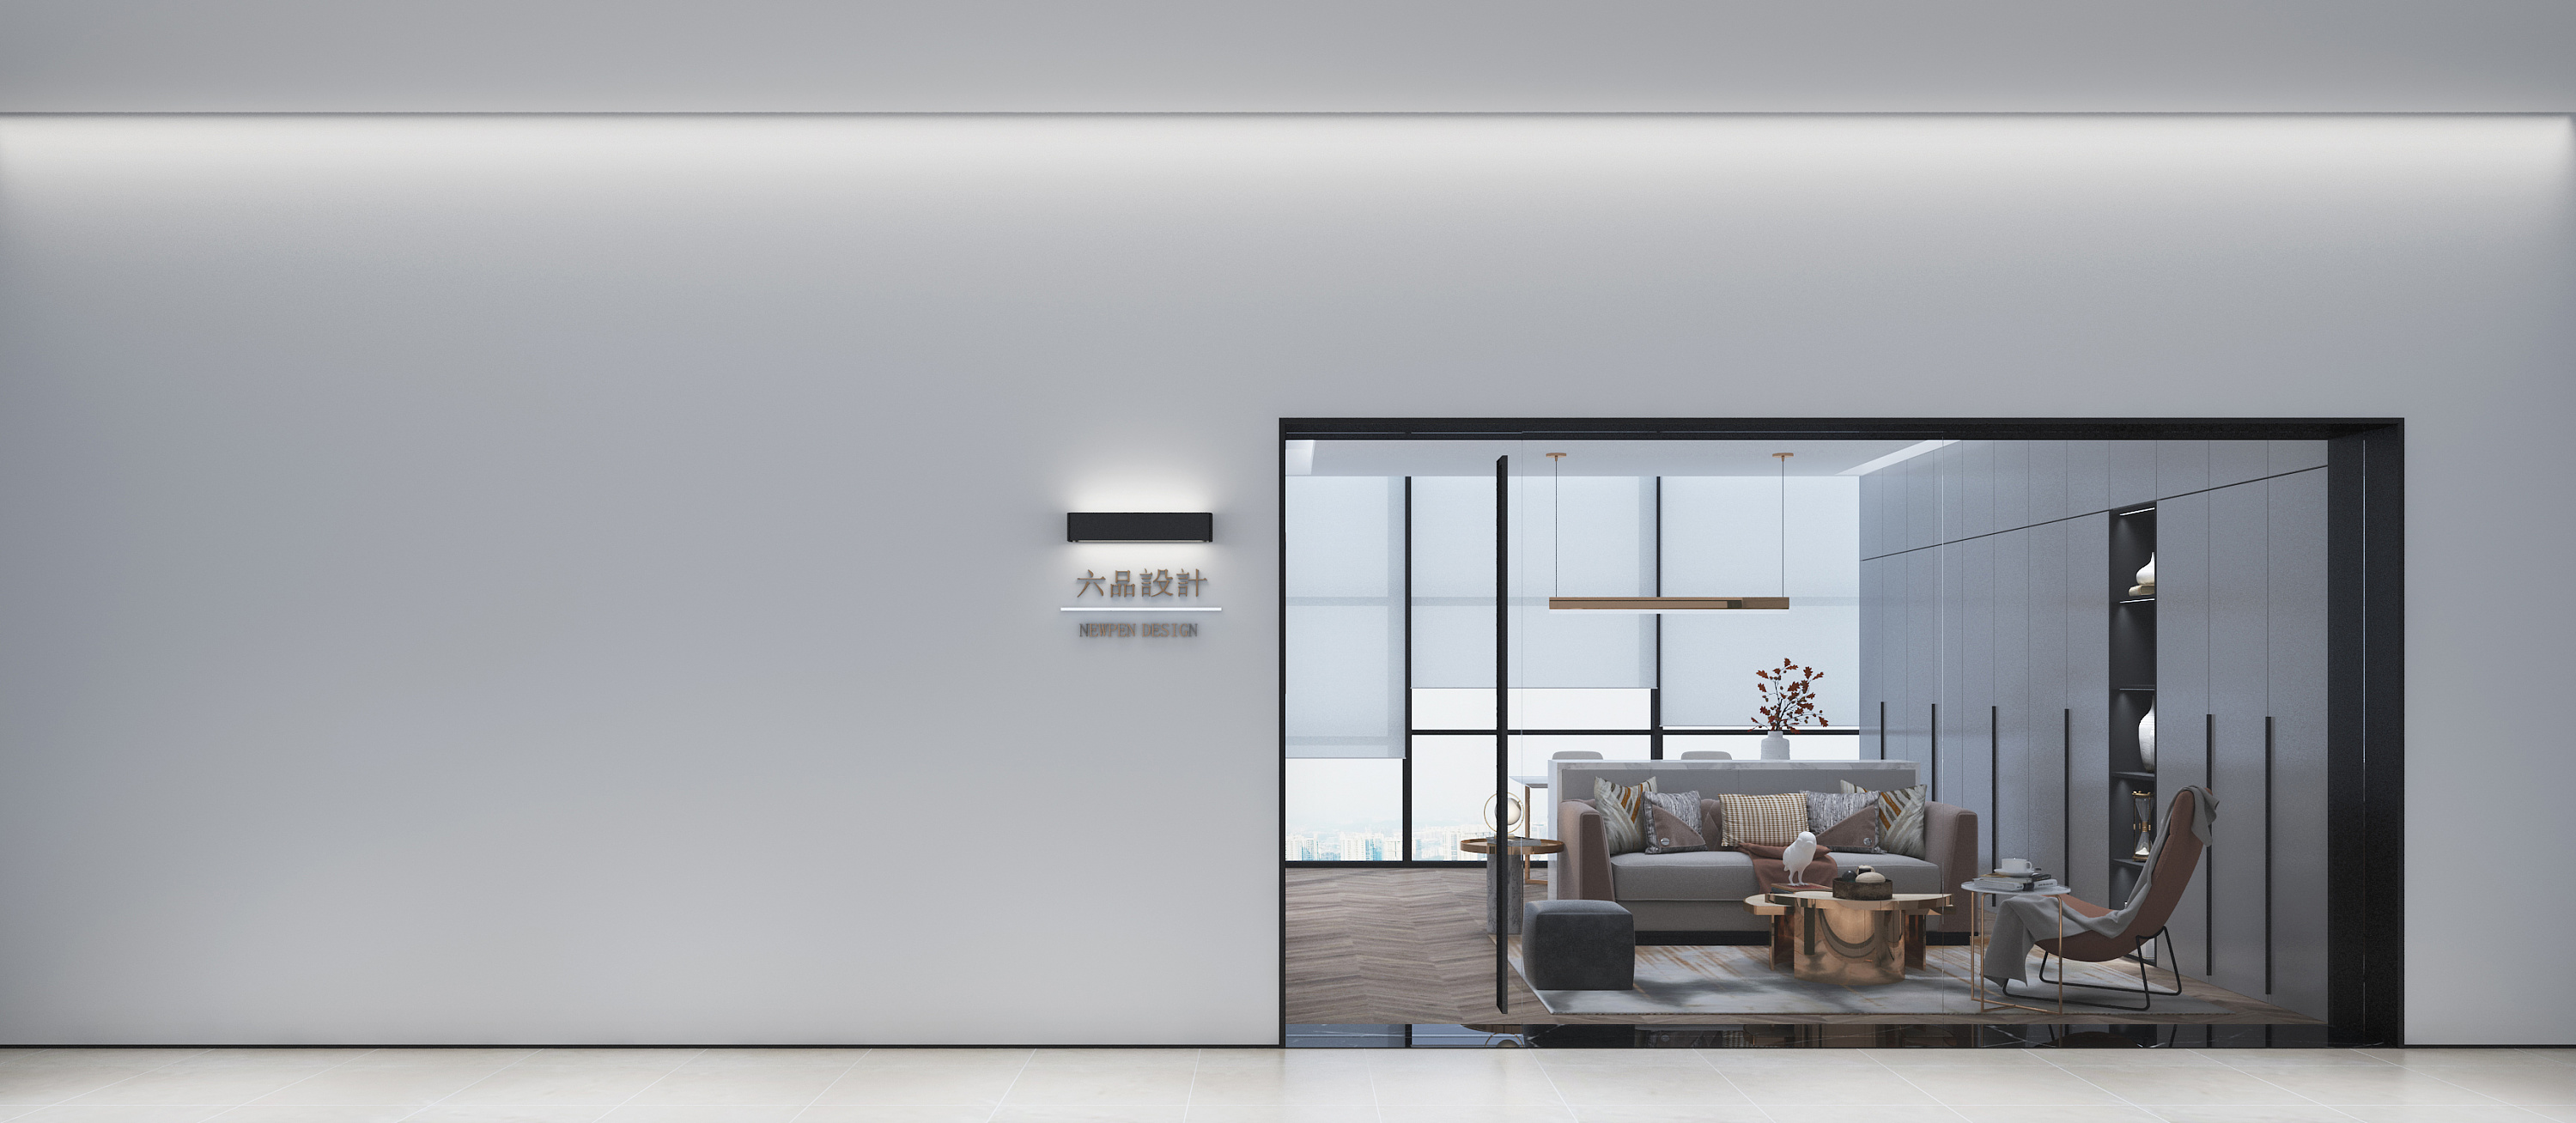 现代简约白色调客厅装修效果图 – 设计本装修效果图